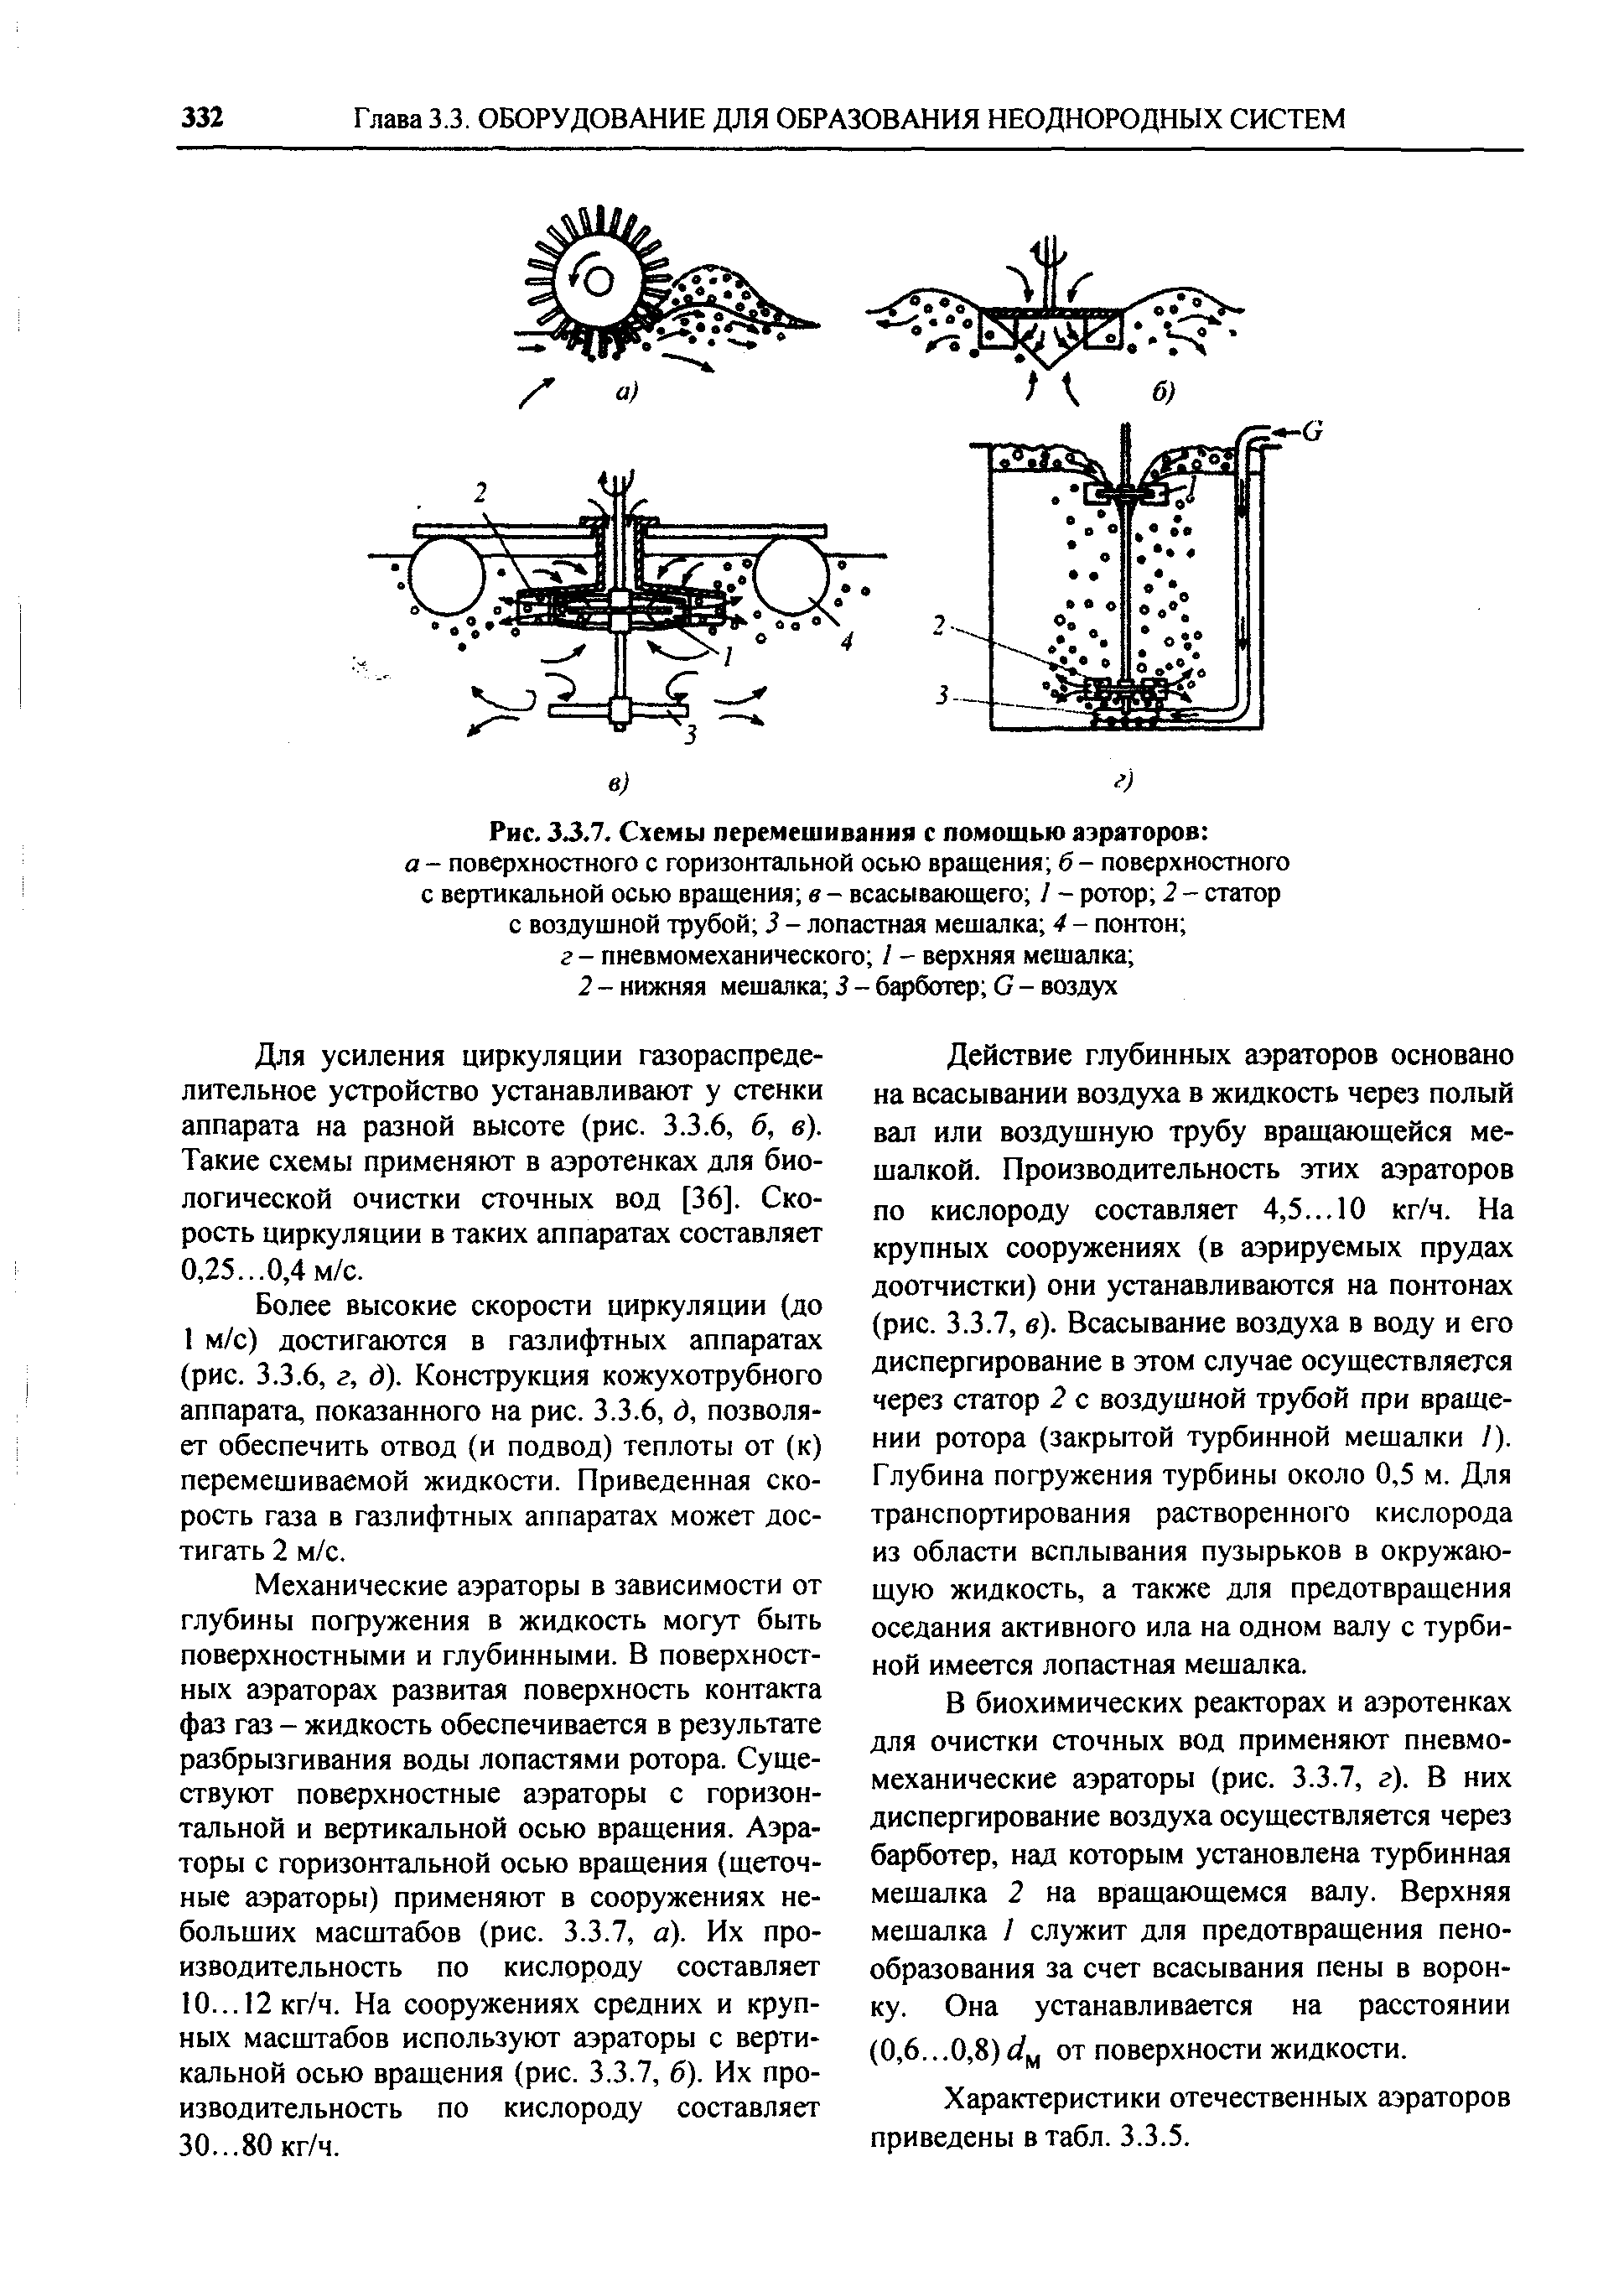 Рис. 3J.7. Схемы перемешивания с помощью аэраторов 
